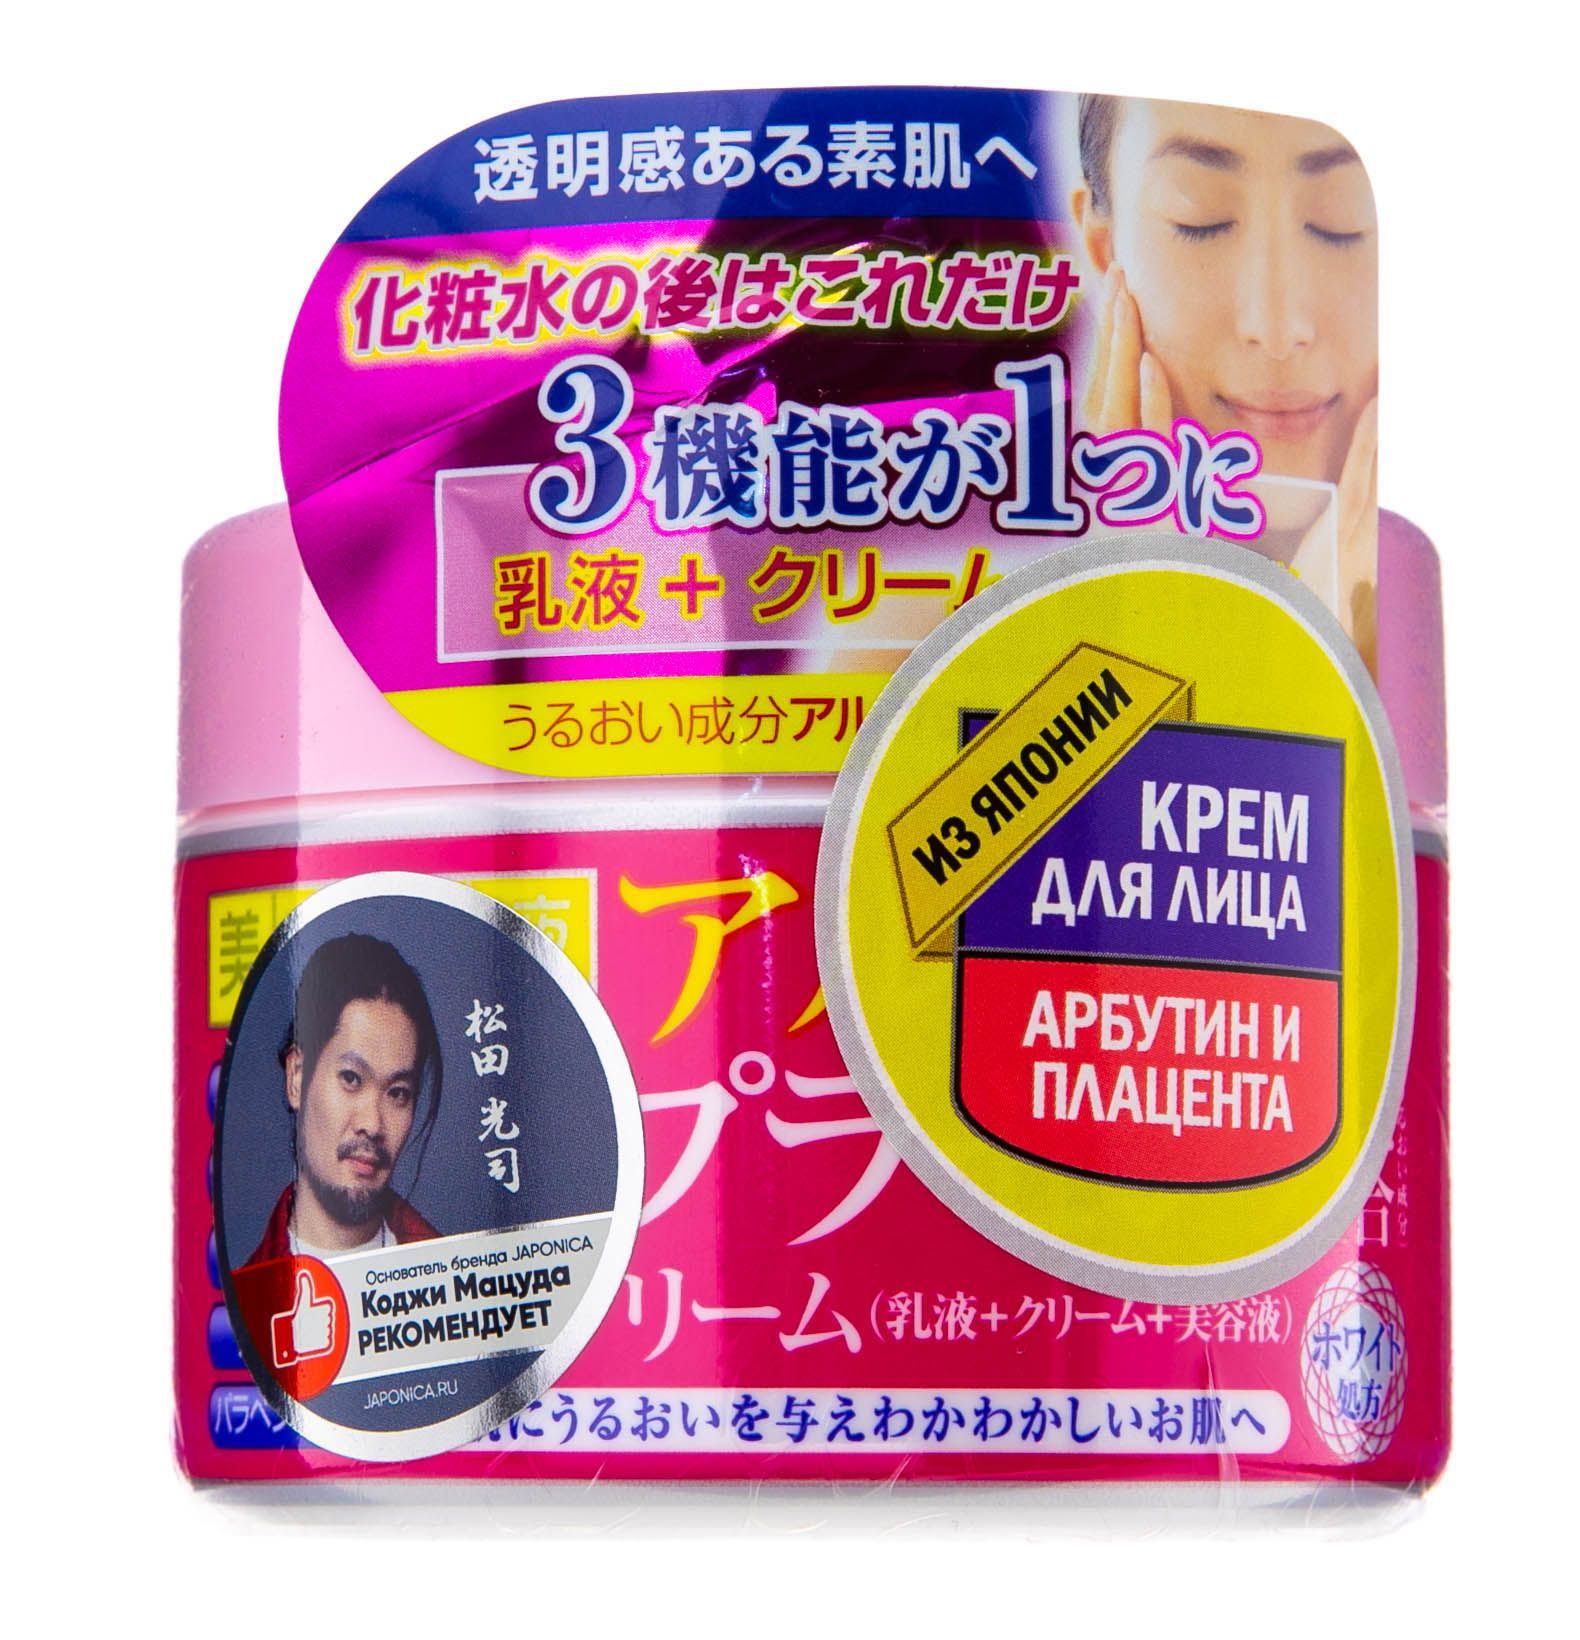 Cosmetex Roland Biyou-Geneki Крем для лица 3 в 1 улучшающий цвет кожи с арбутином и экстрактом плаценты 180 гр